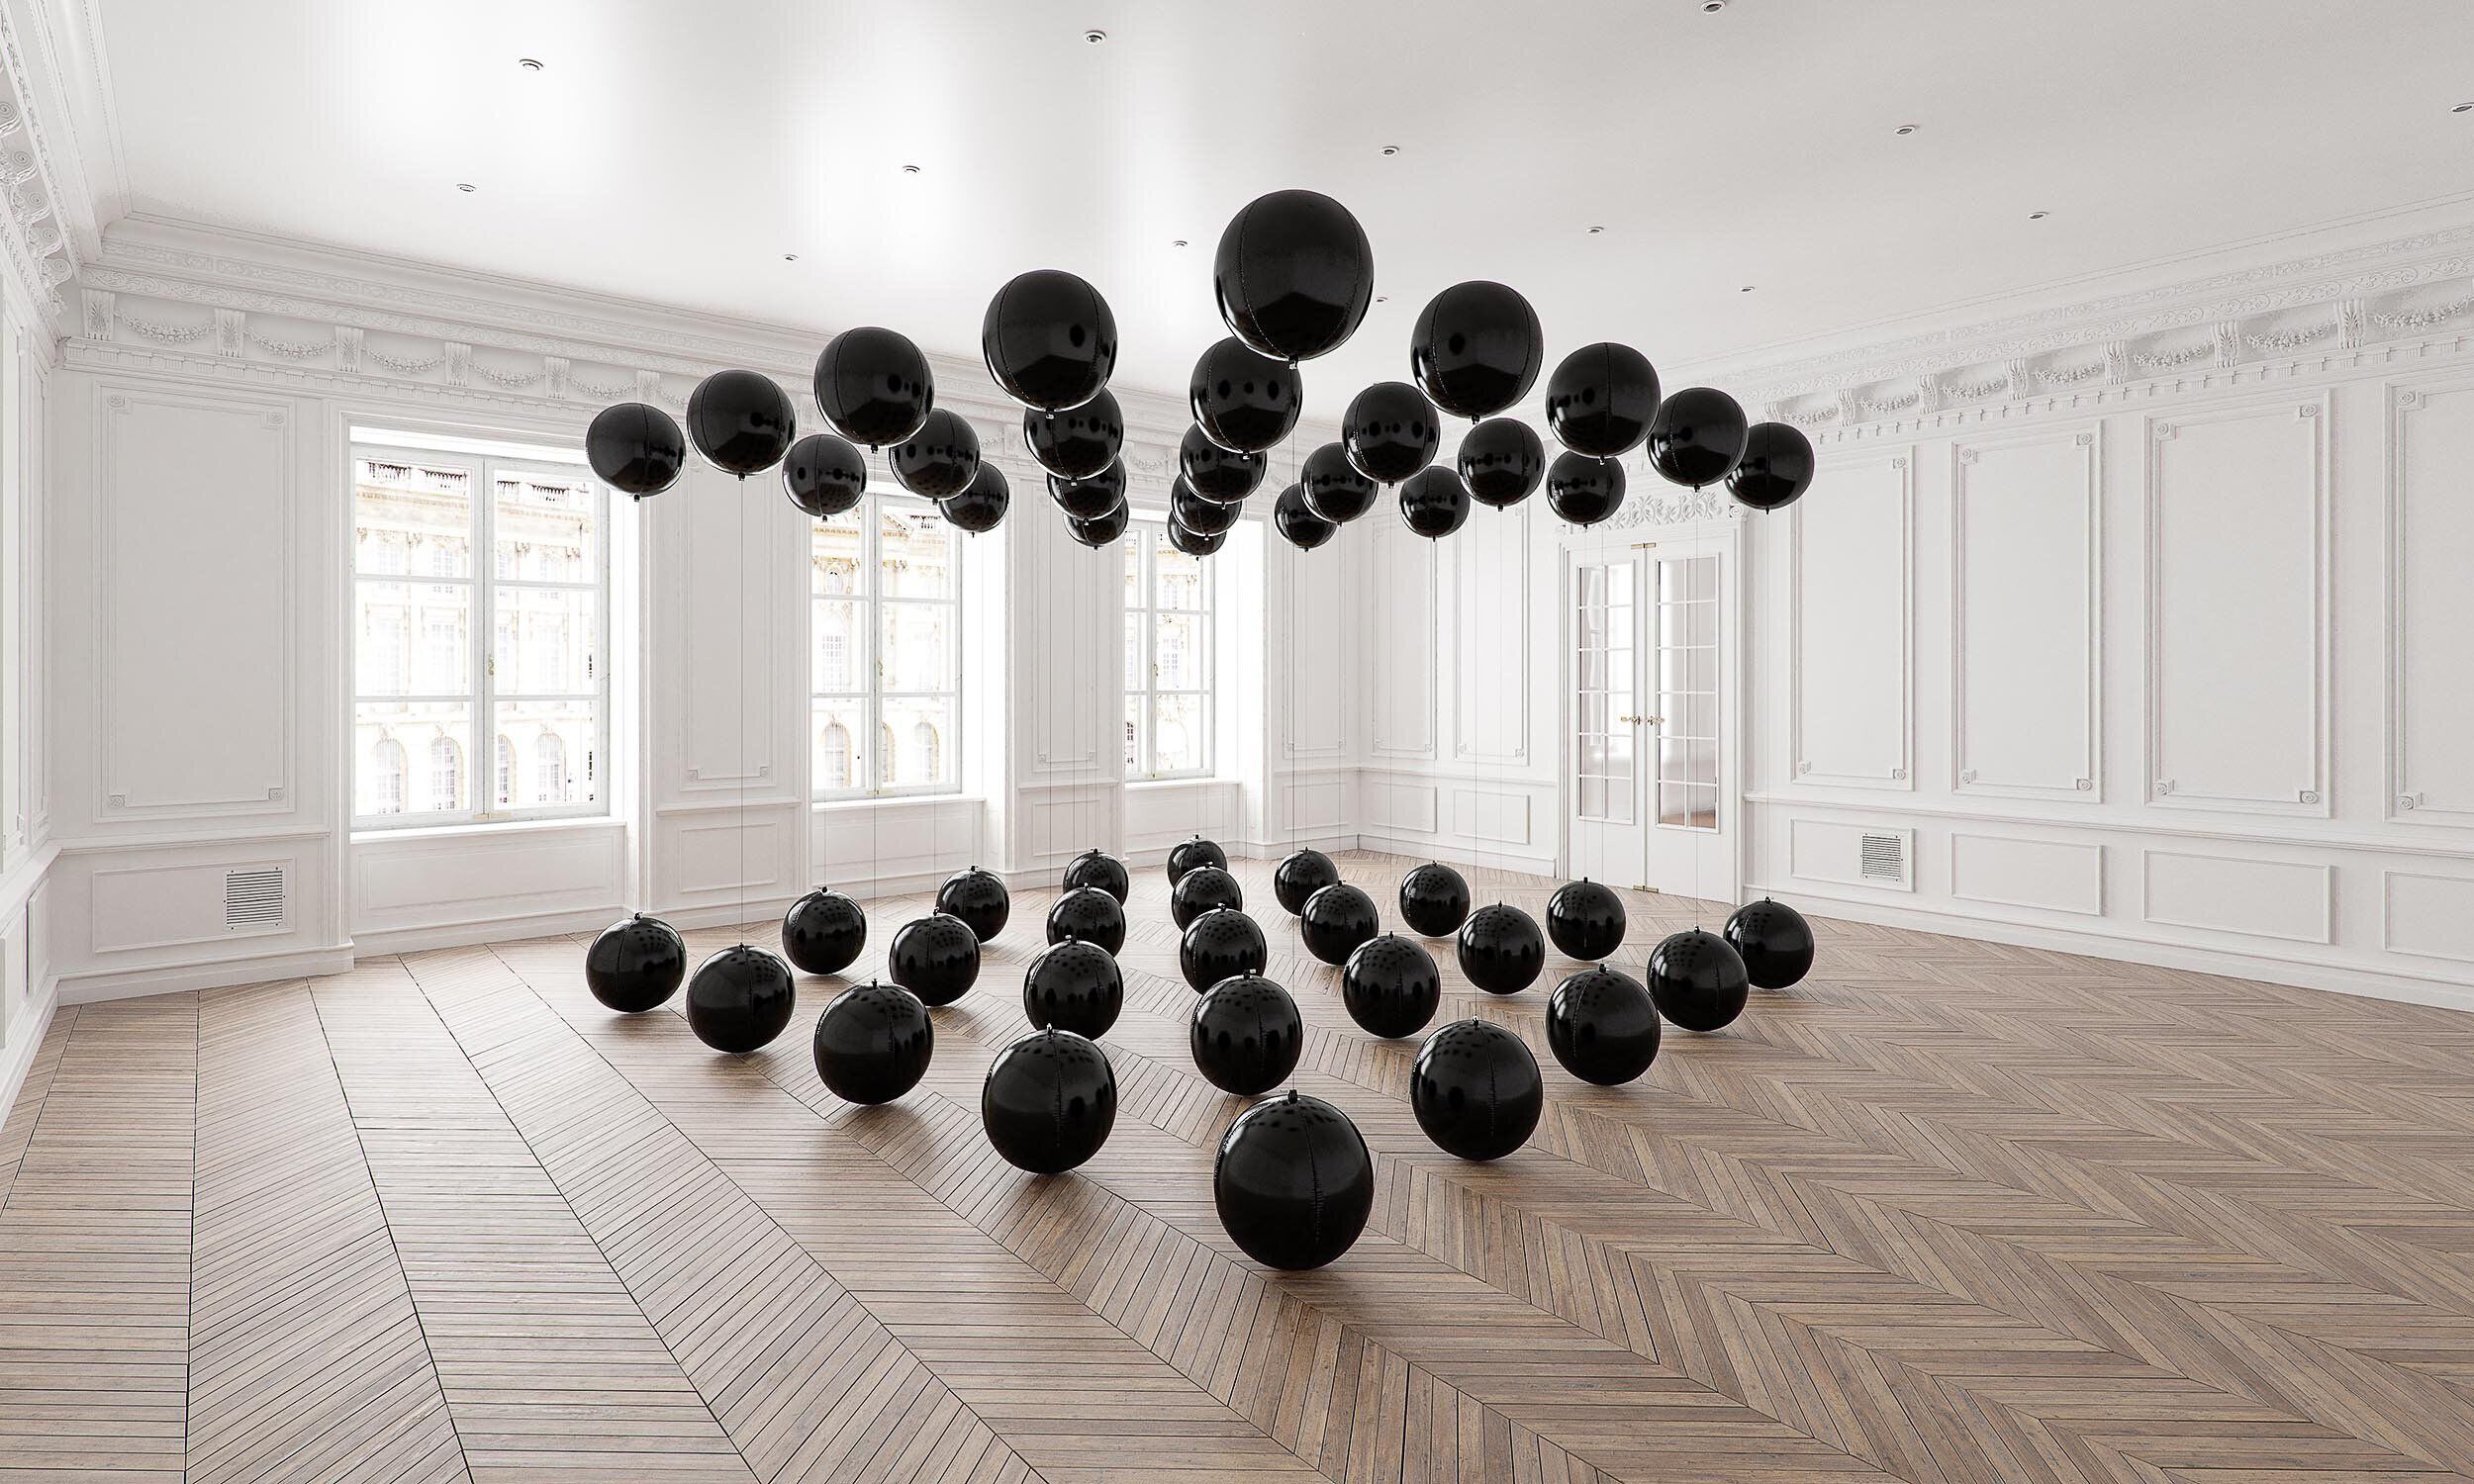 Instalación 'Black Balloons', de Tadao Cern.